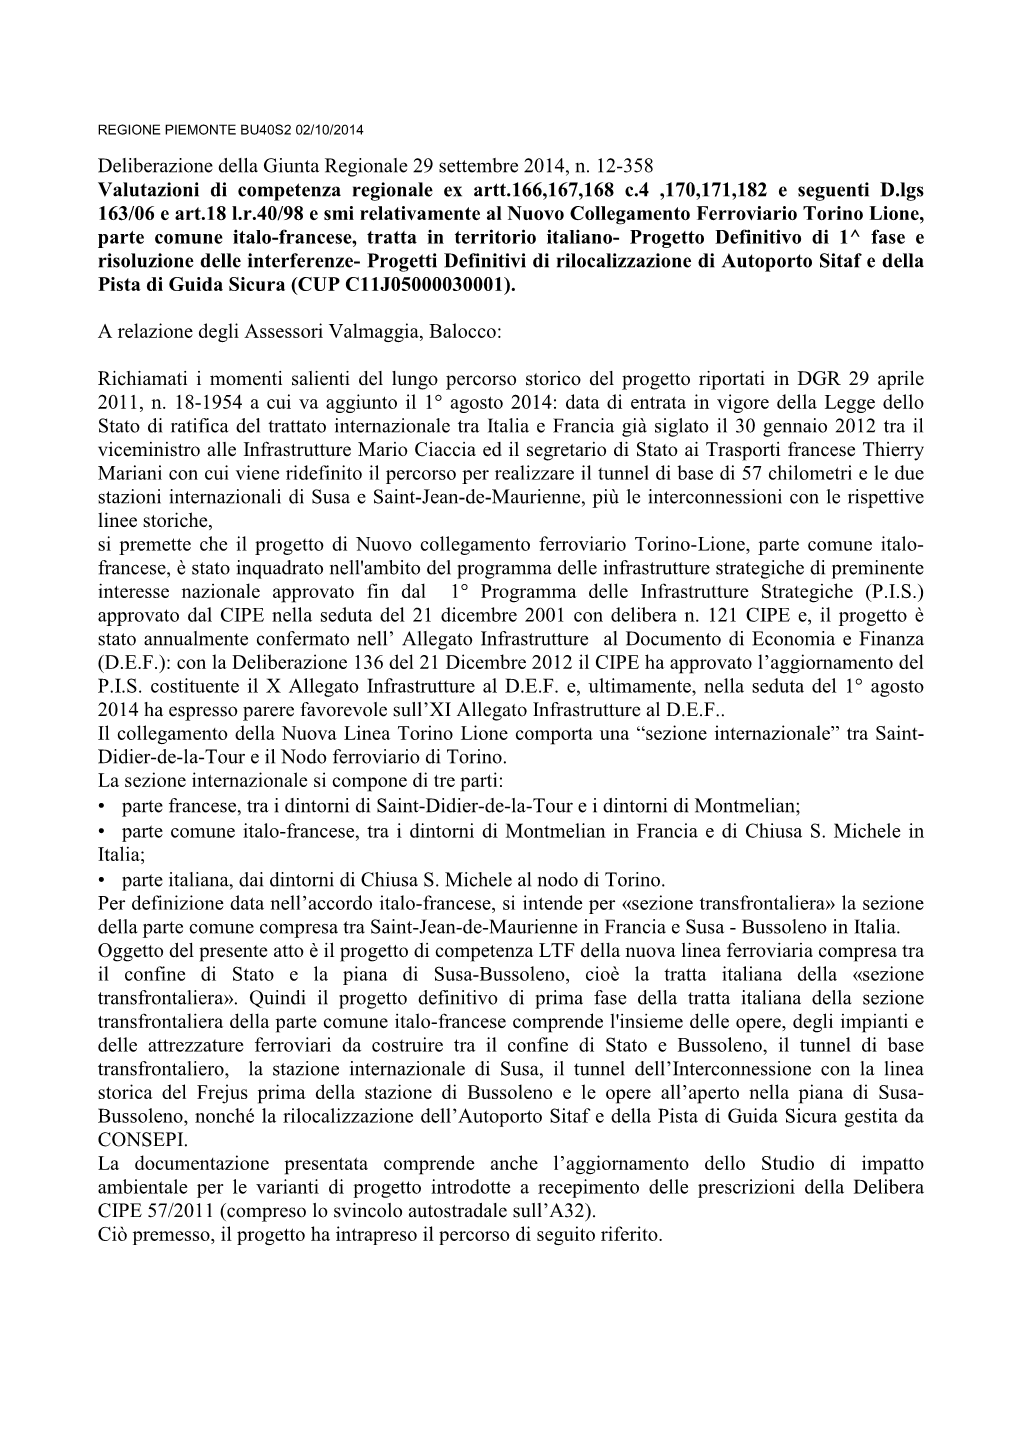 Deliberazione Della Giunta Regionale 29 Settembre 2014, N. 12-358 Valutazioni Di Competenza Regionale Ex Artt.166,167,168 C.4 ,1